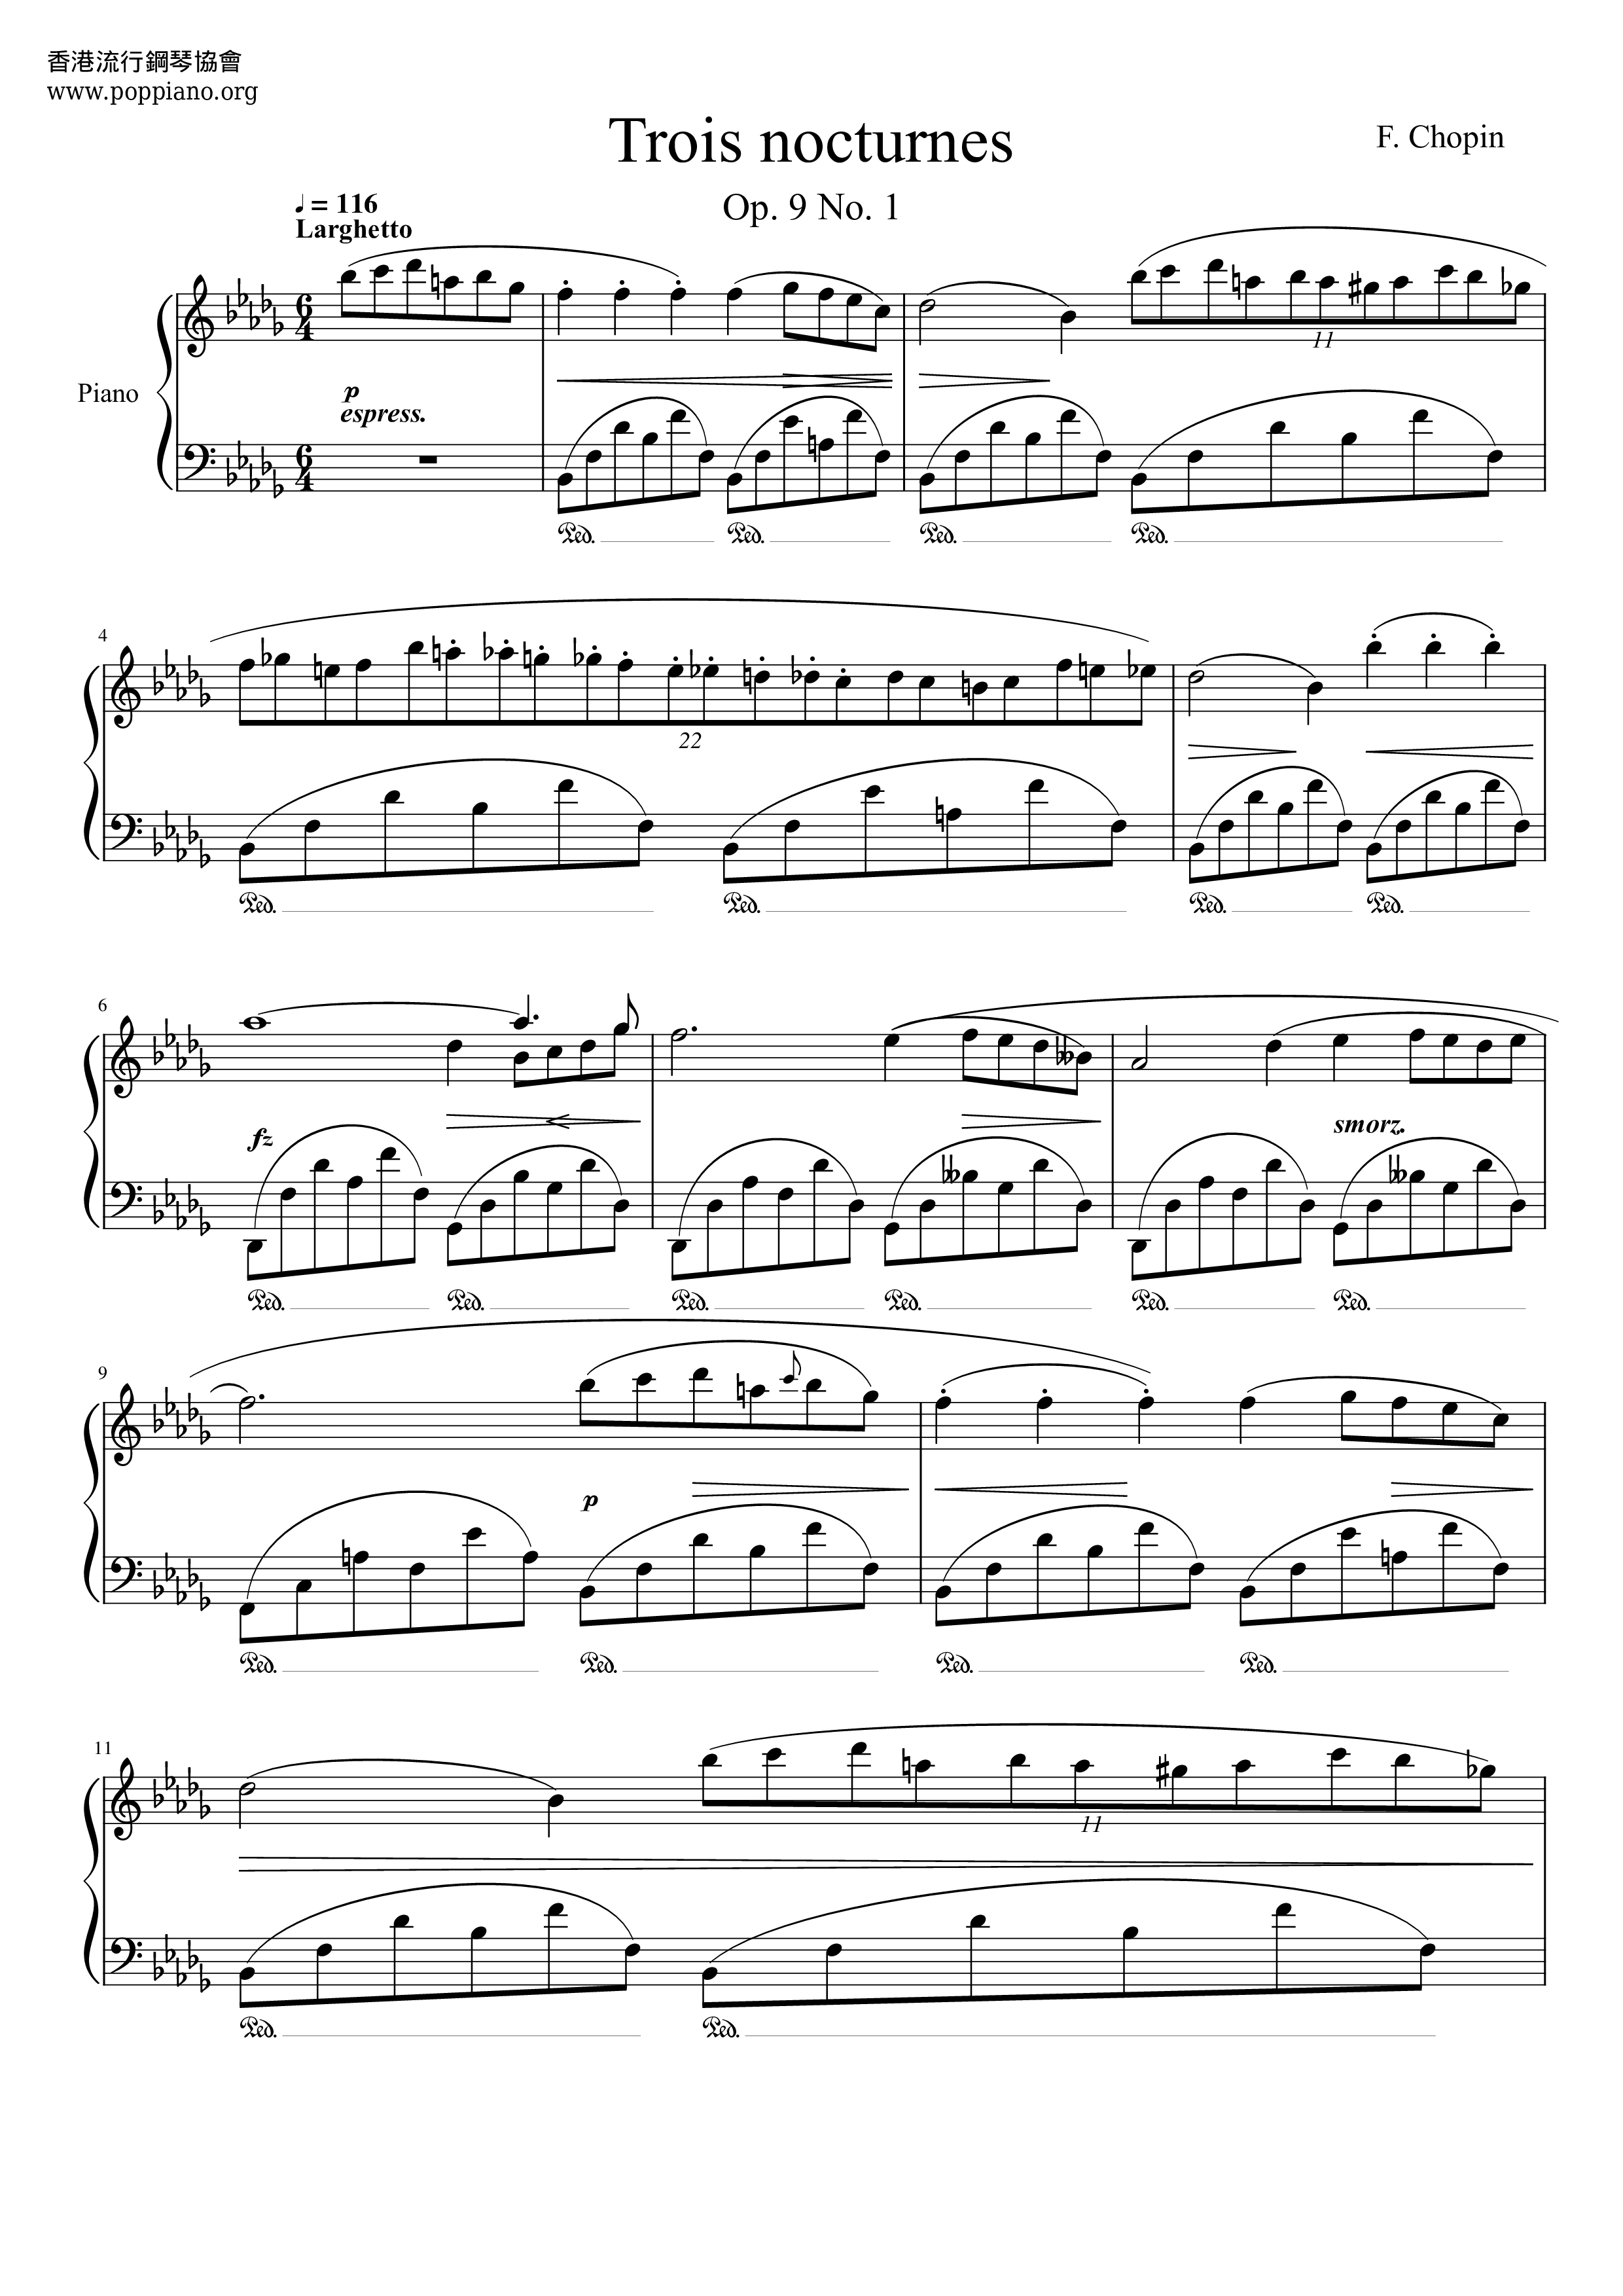 Nocturne Op. 9 No. 1 in B flat minor Score